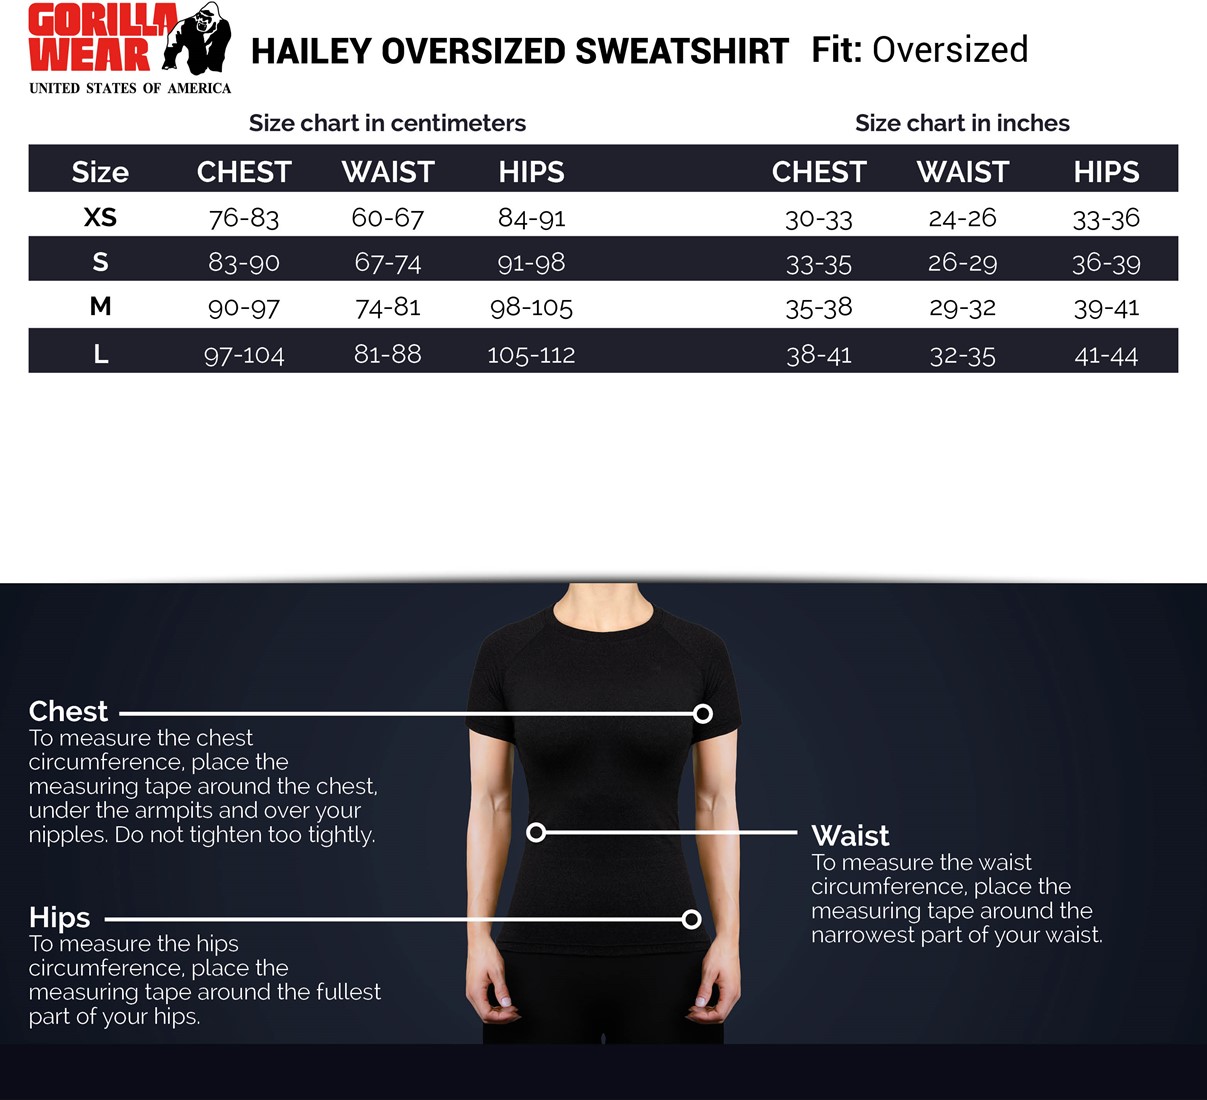 hailey-overzised-sweatshirt-sizechart